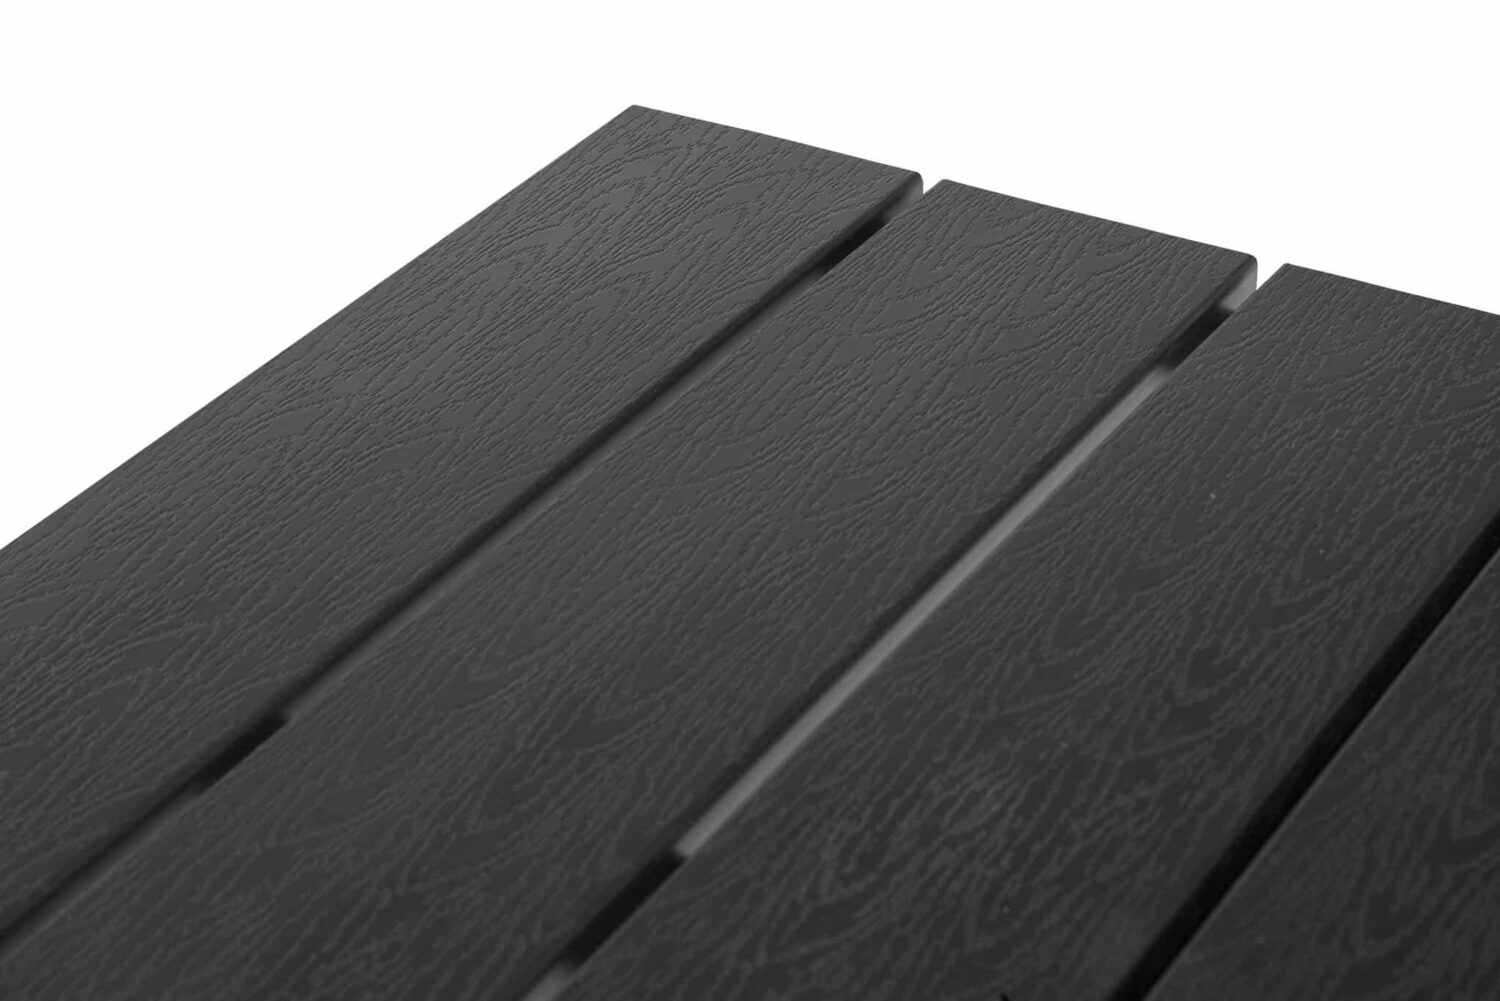 Hillerstorp Brighton Cafébord 120x70 cm. Stomme av svart aluminium och bordsskiva i svart Gaumo.